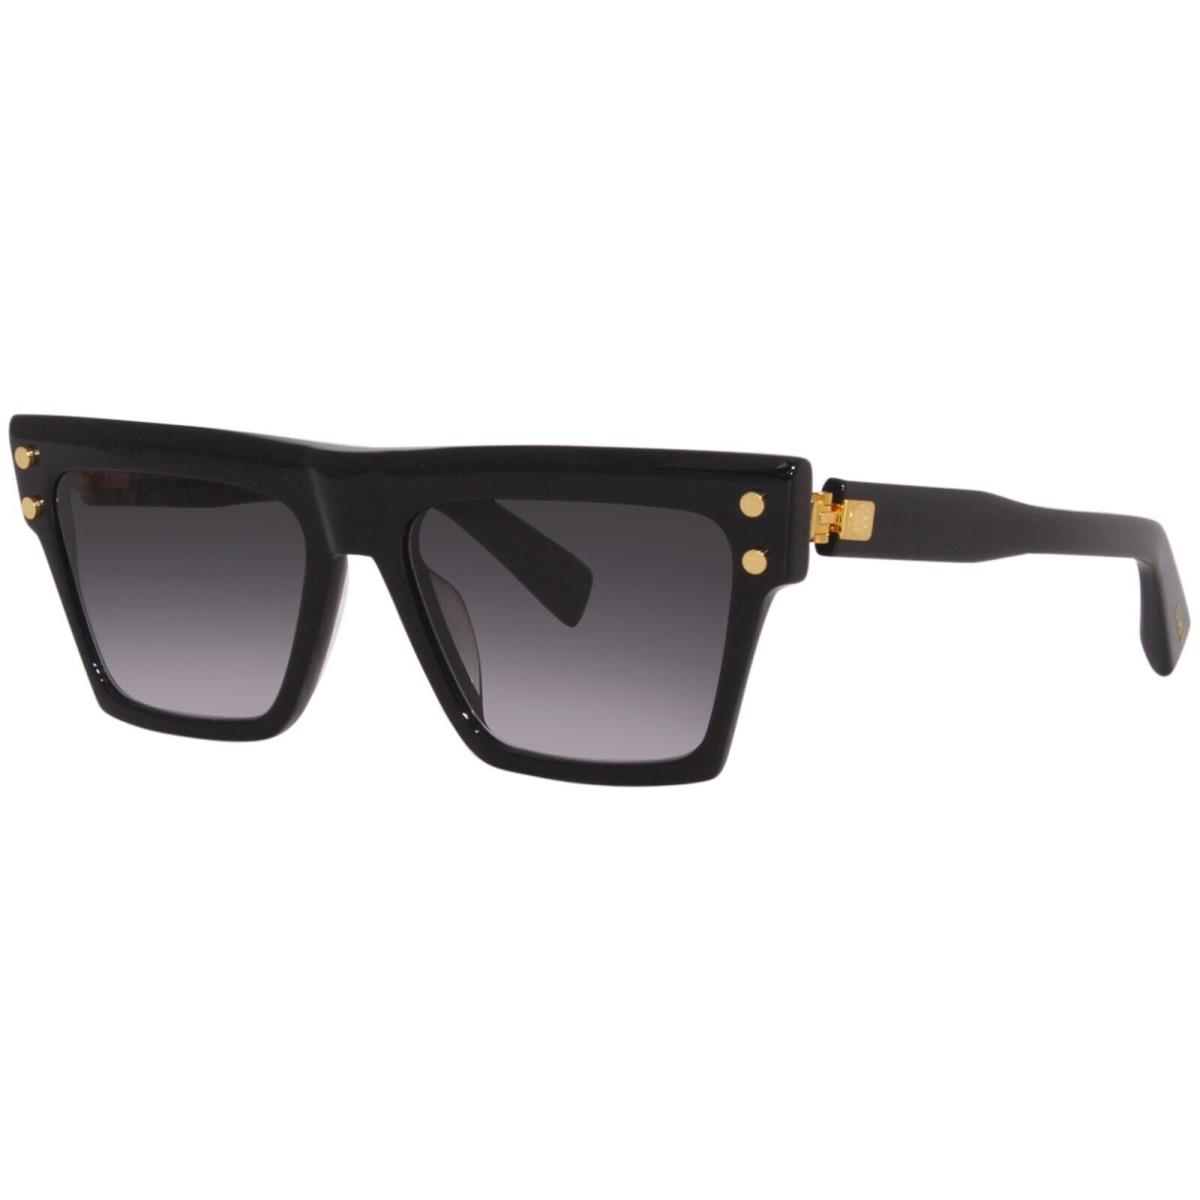 Balmain Sunglasses B-v Black Gold Designer Frames Gray Lens 54MM